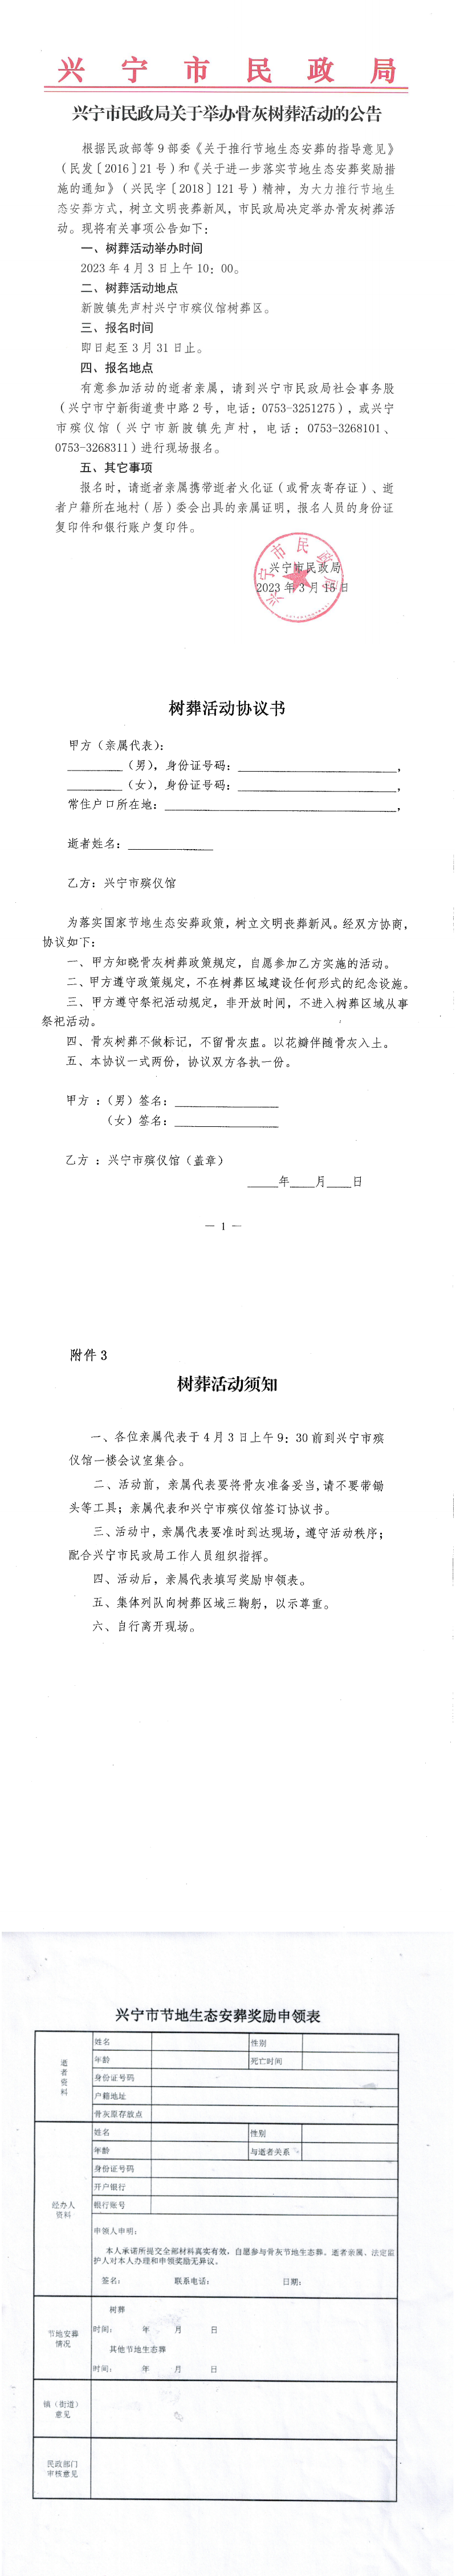 兴宁市民政局关于举办骨灰树葬活动的公告.png